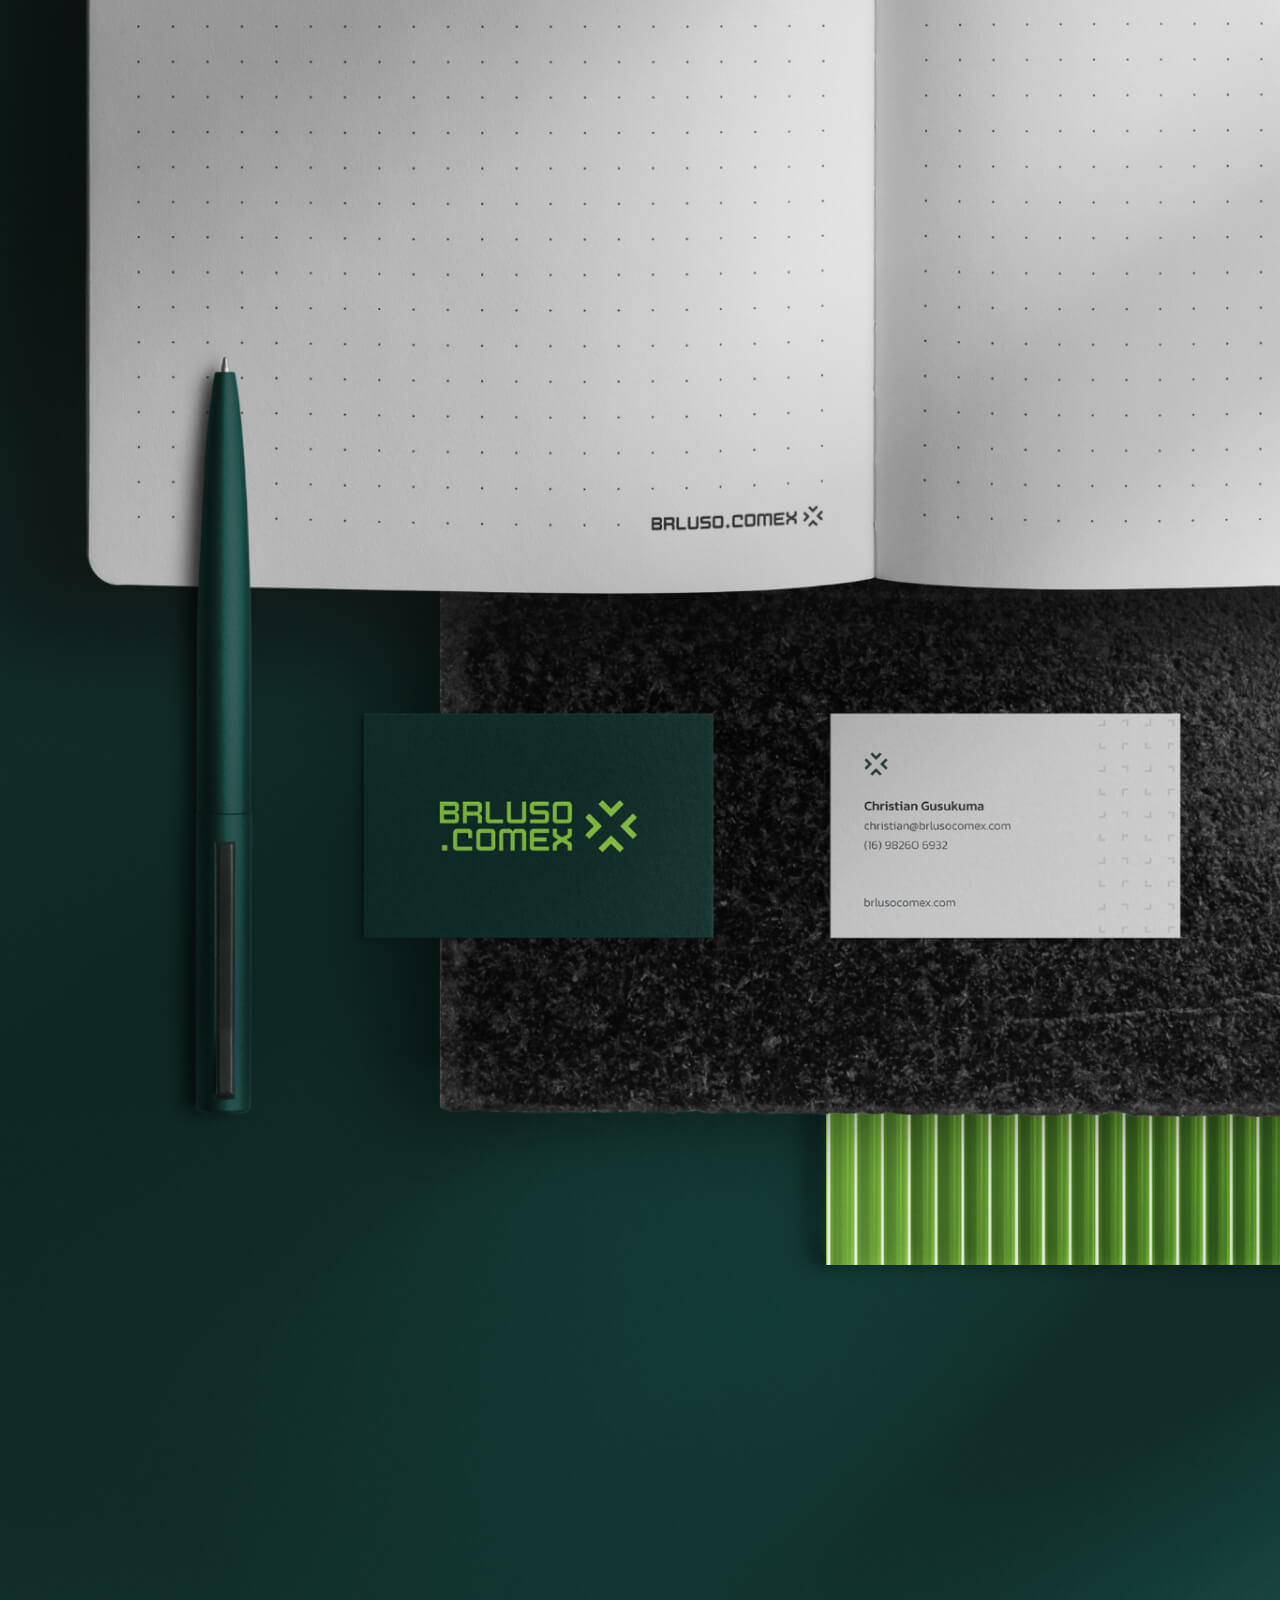 Exemplos de papelaria da identidade visual, como caderno, cartões de visita e cores da marca.